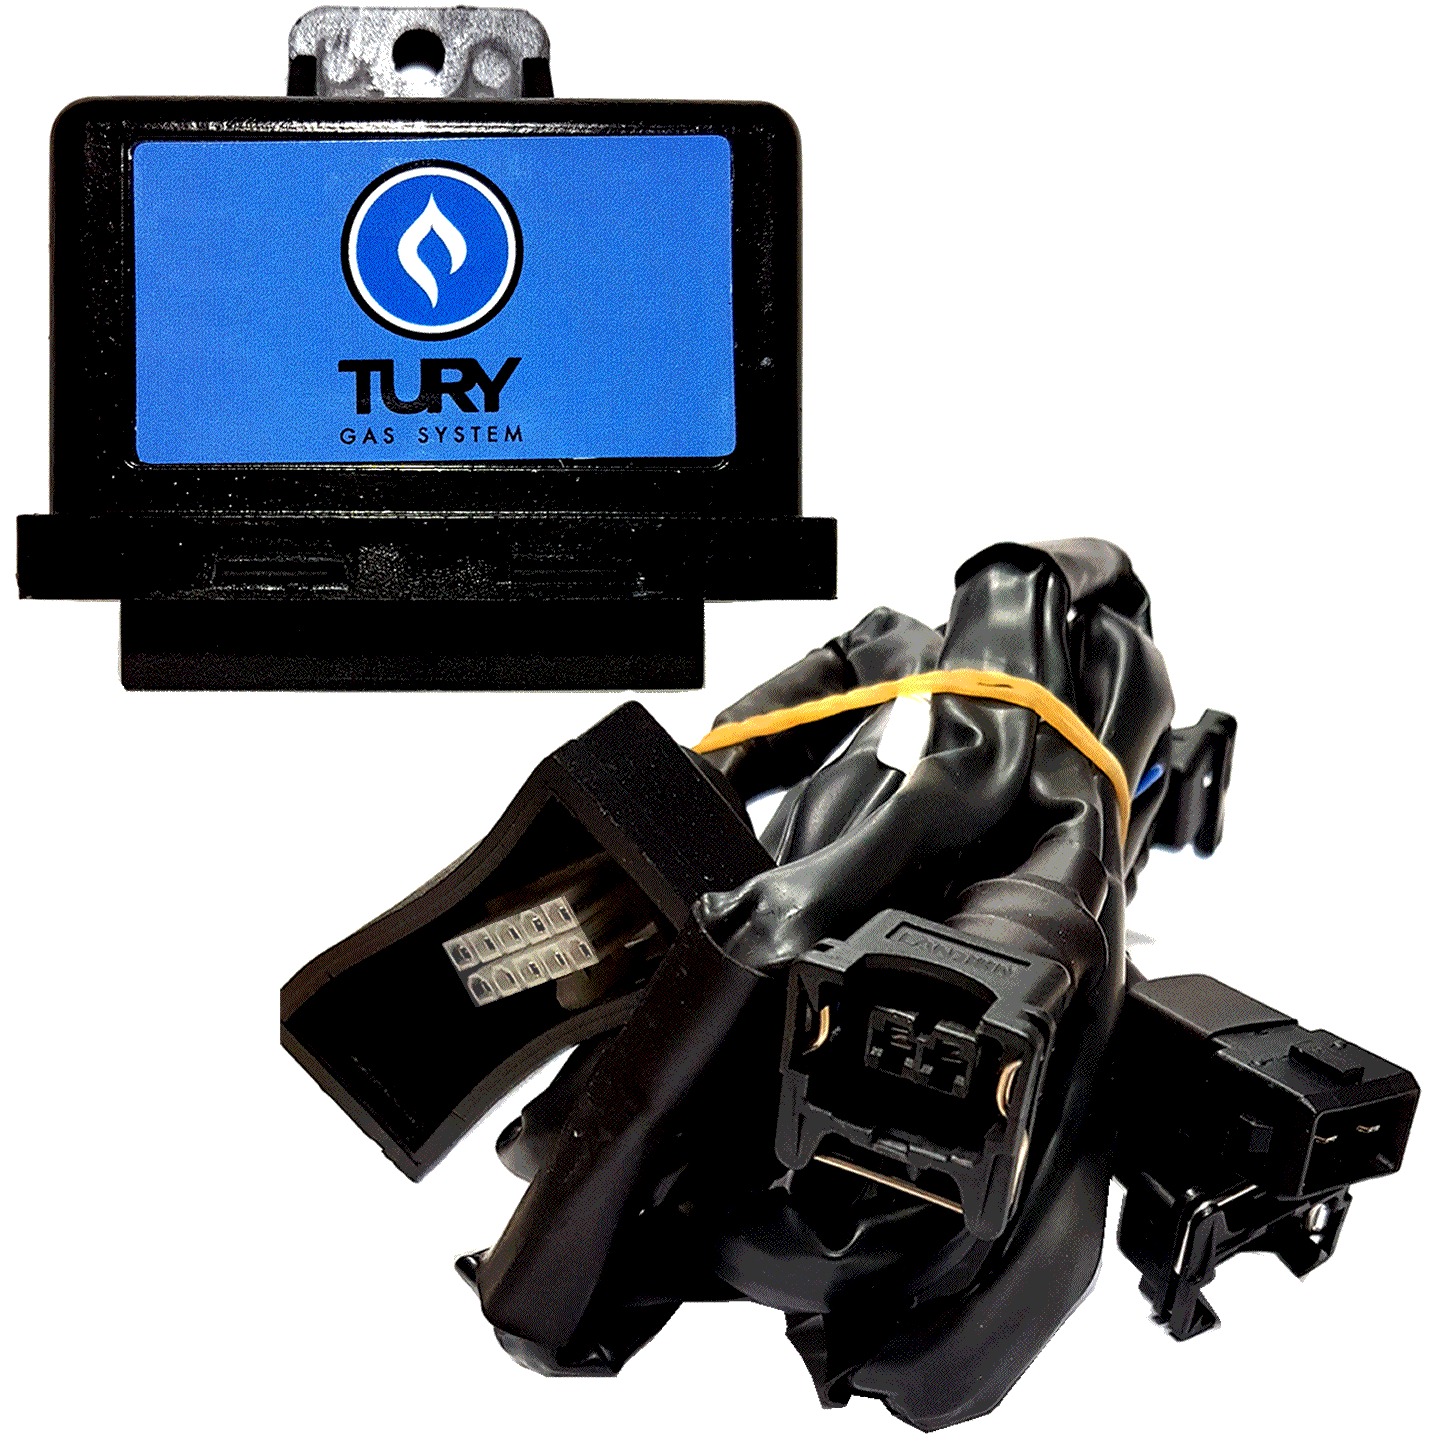 Micro Chave Comutadora T1200A e Emulador 4 Bicos T54A TURY GAS